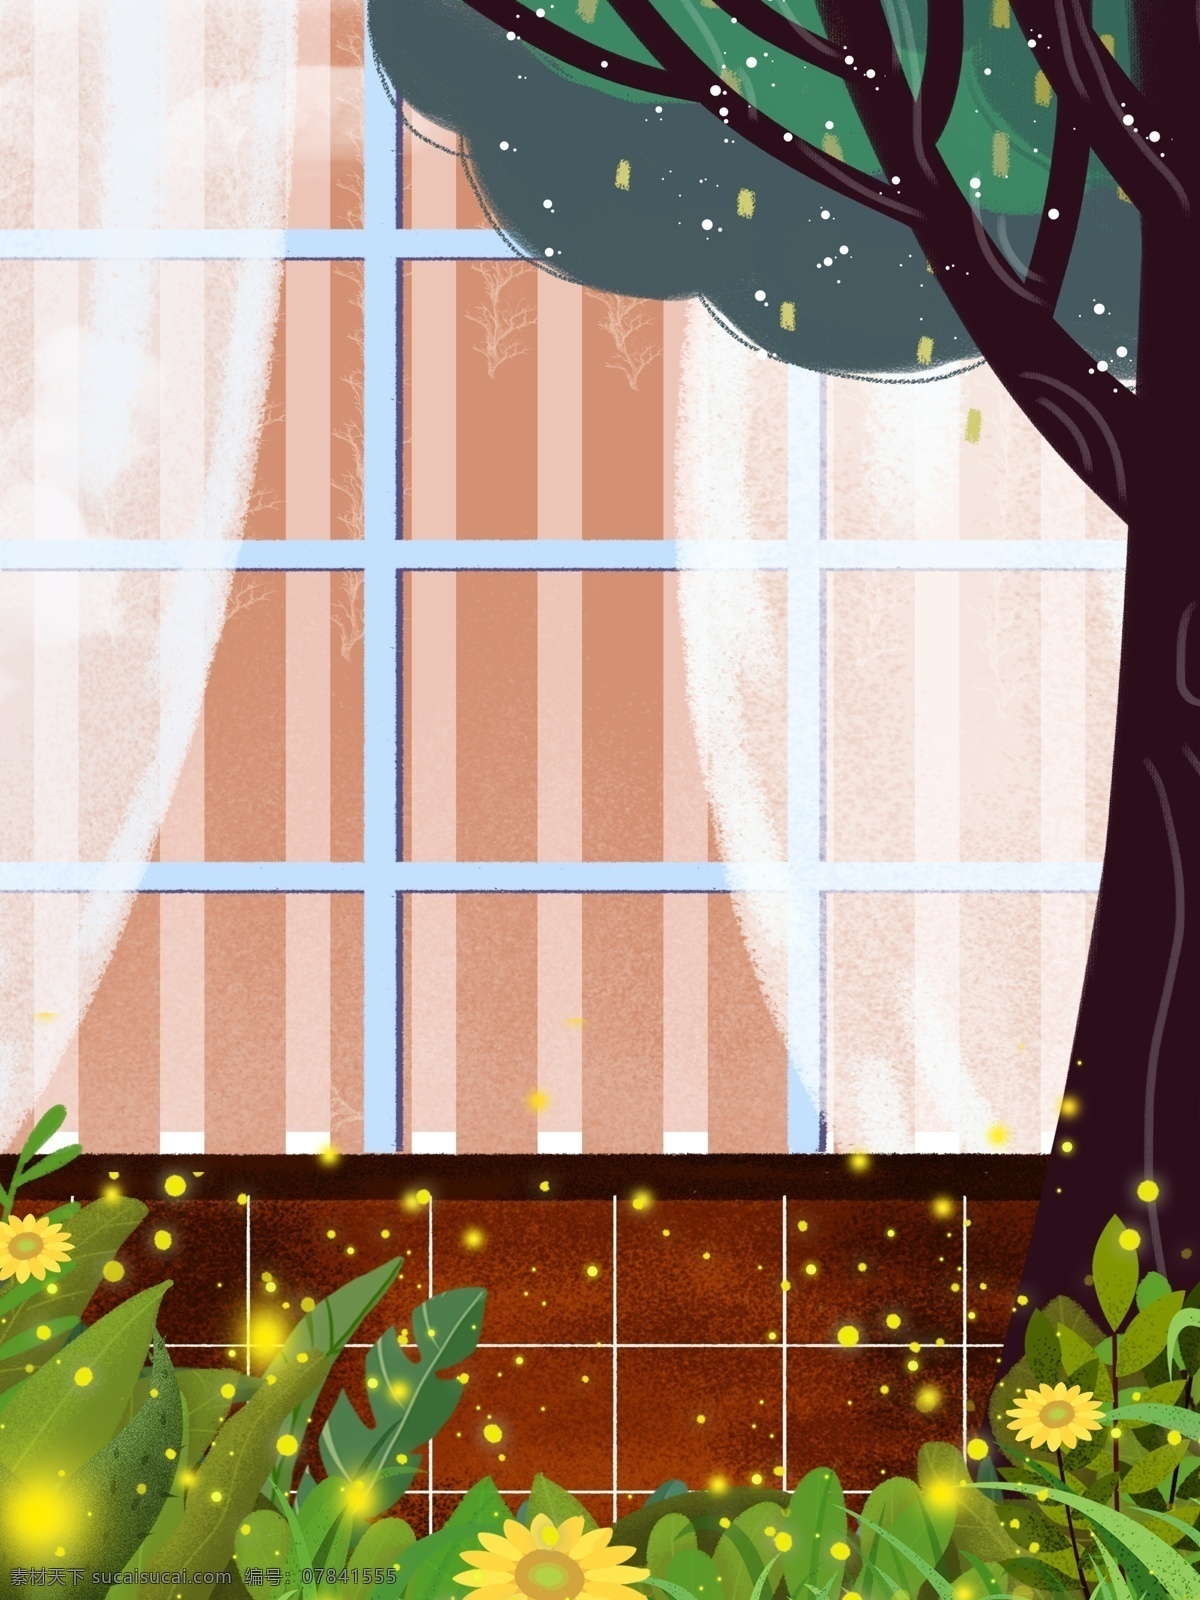 植物 树木 窗户 外面 手绘 背景 草丛 窗户卡通 彩色 创意 装饰 设计背景 海报背景 简约 图案